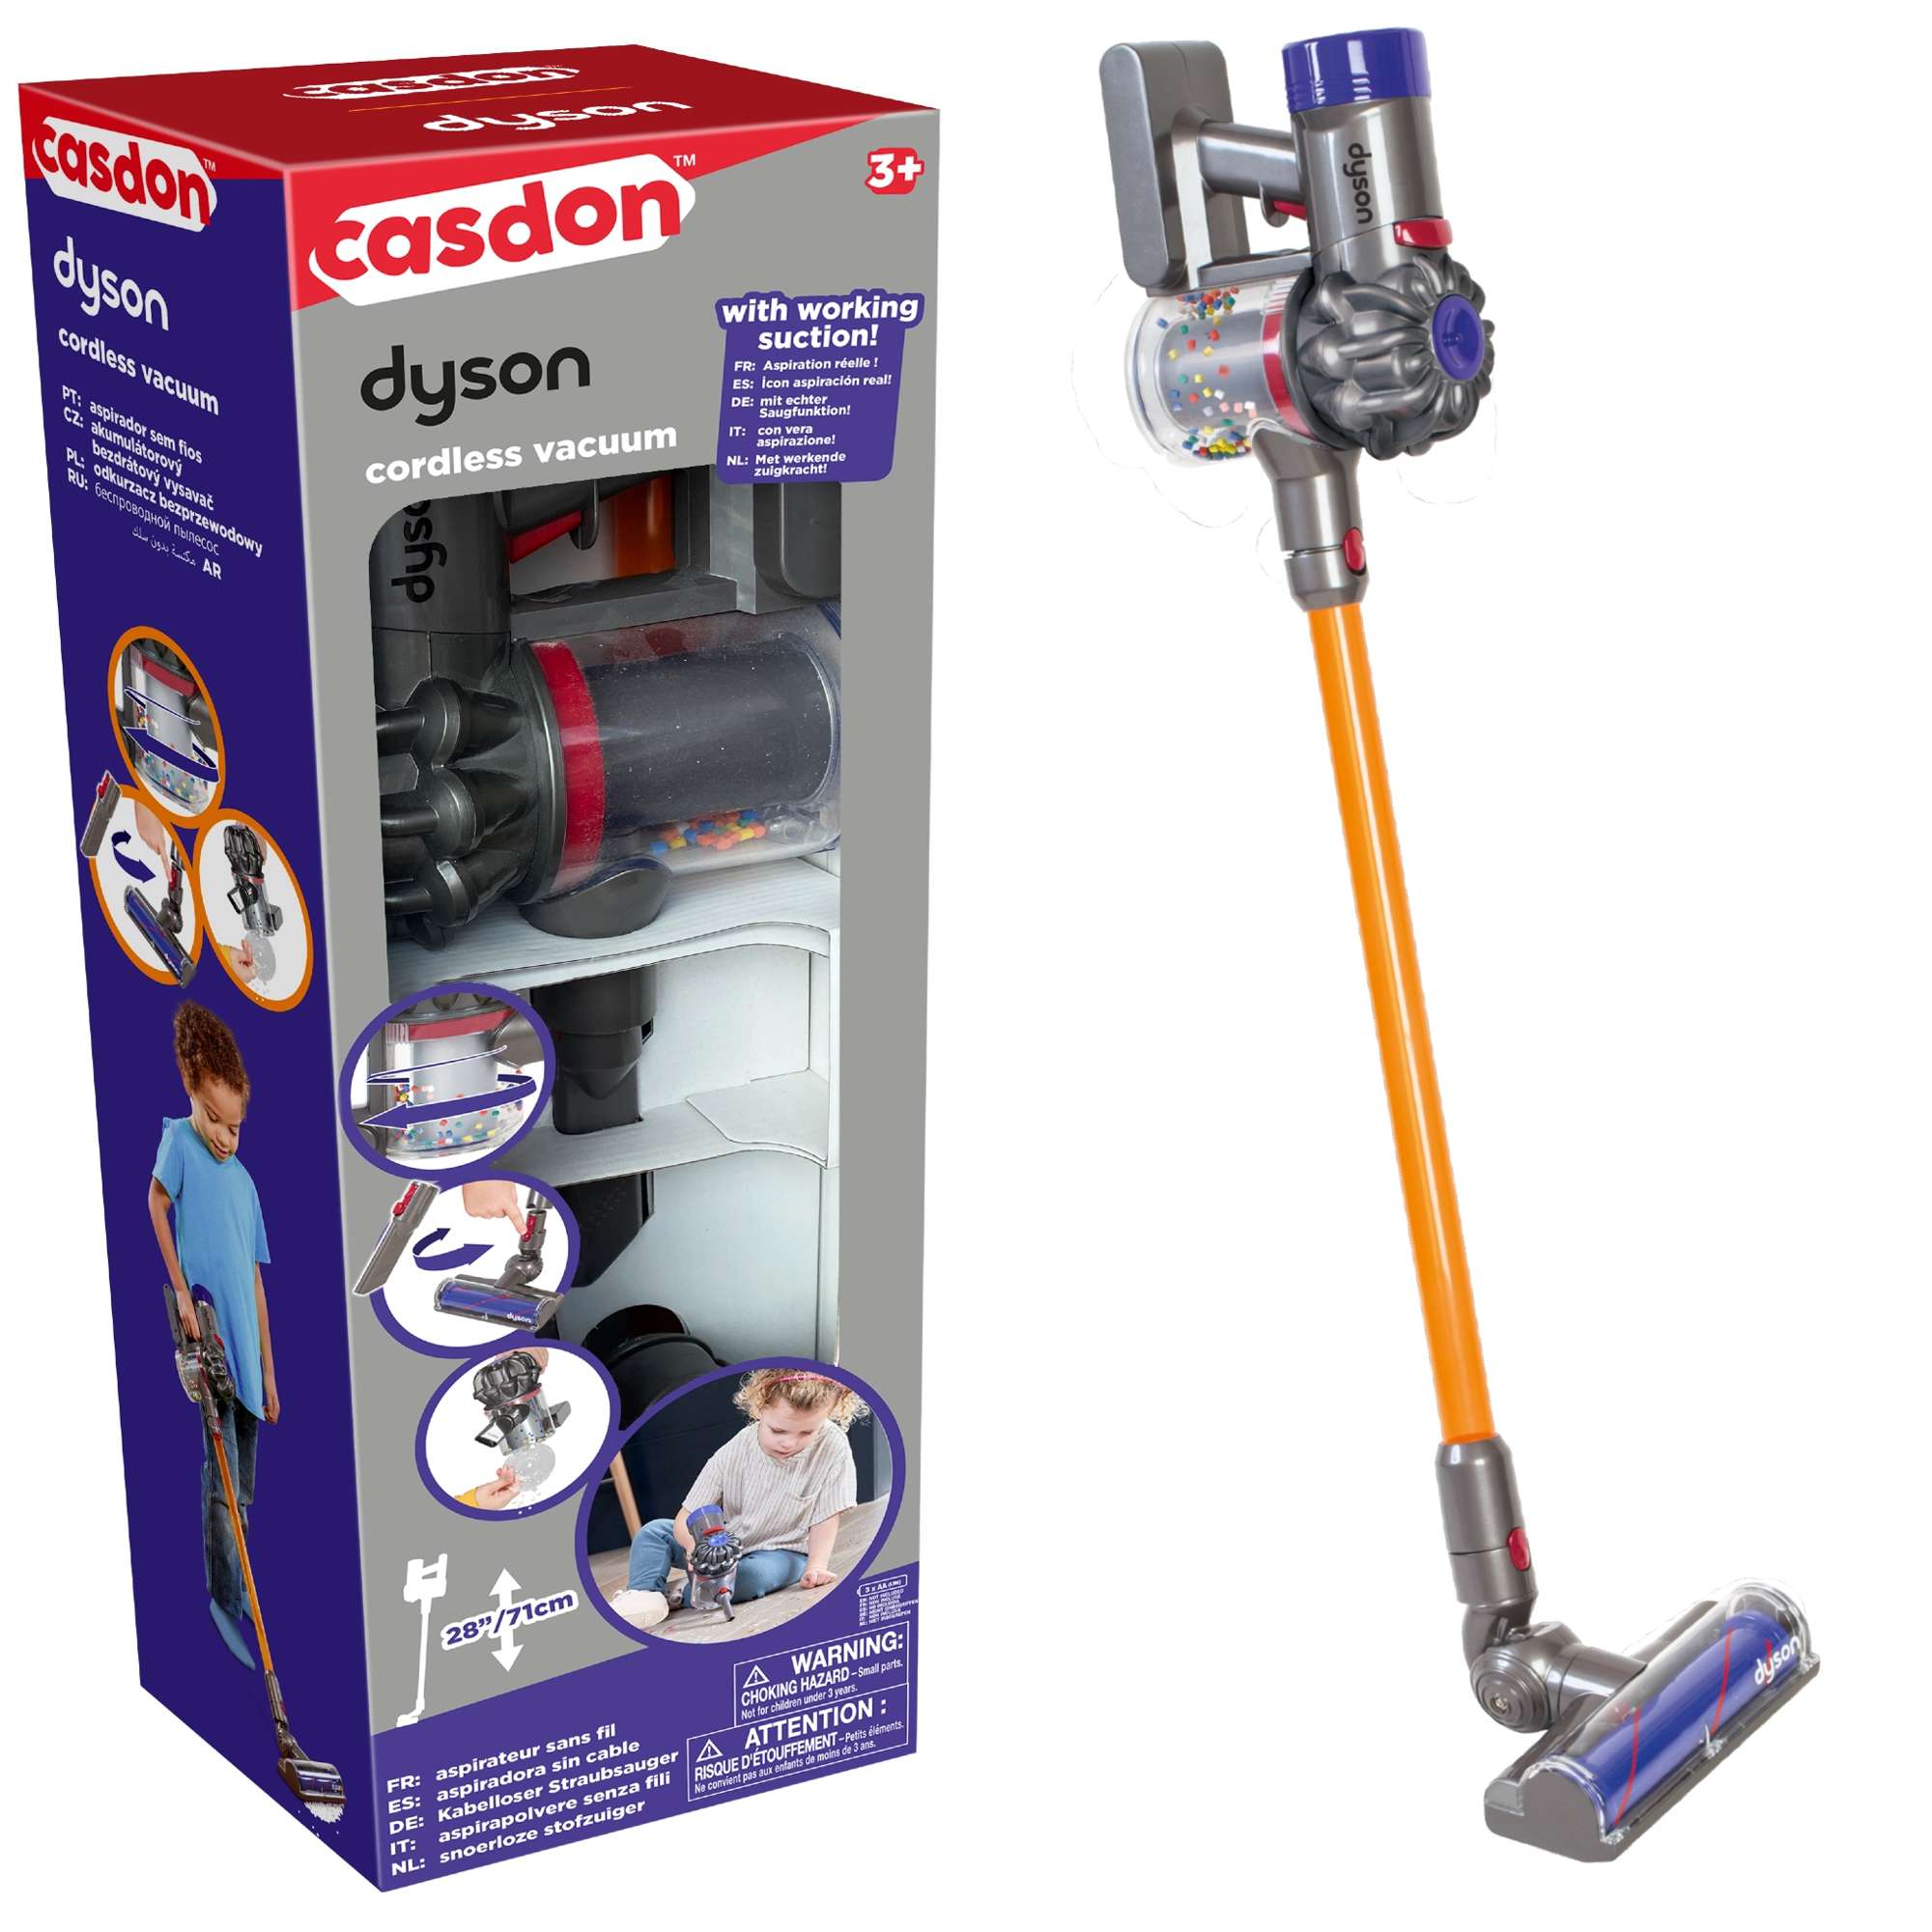 Upright für Kinder Staubsaug Cordless Casdon Dyson Spielzeug interaktive Vakuum